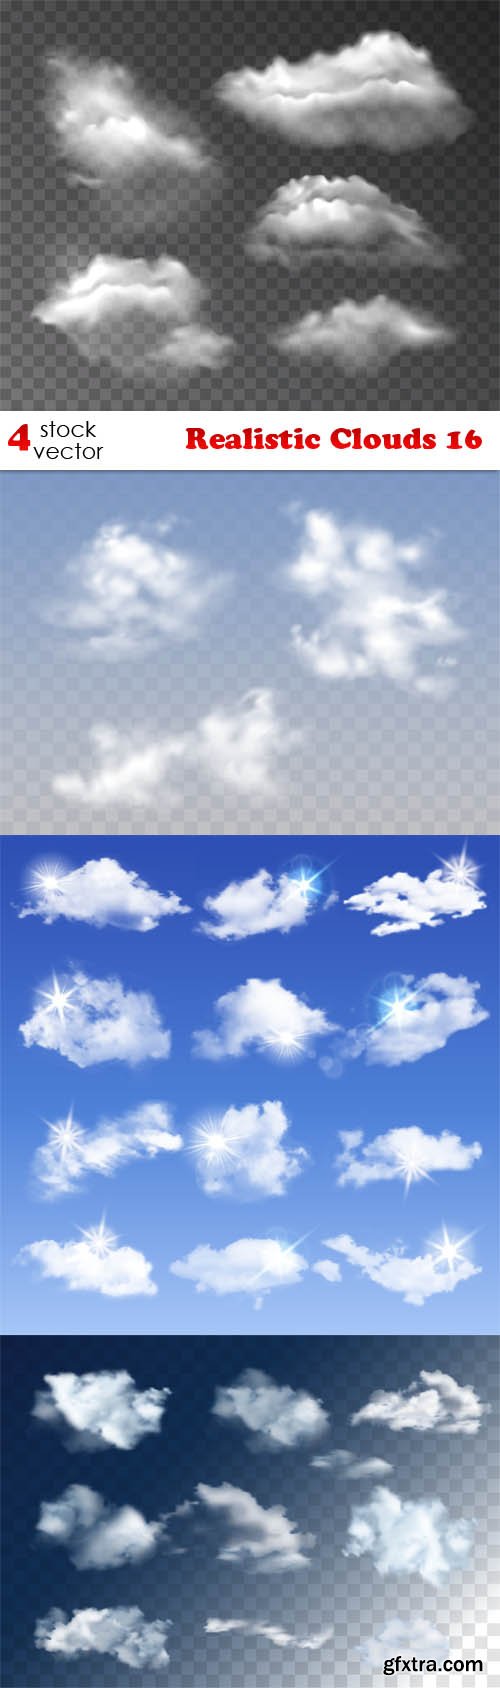 Vectors - Realistic Clouds 16